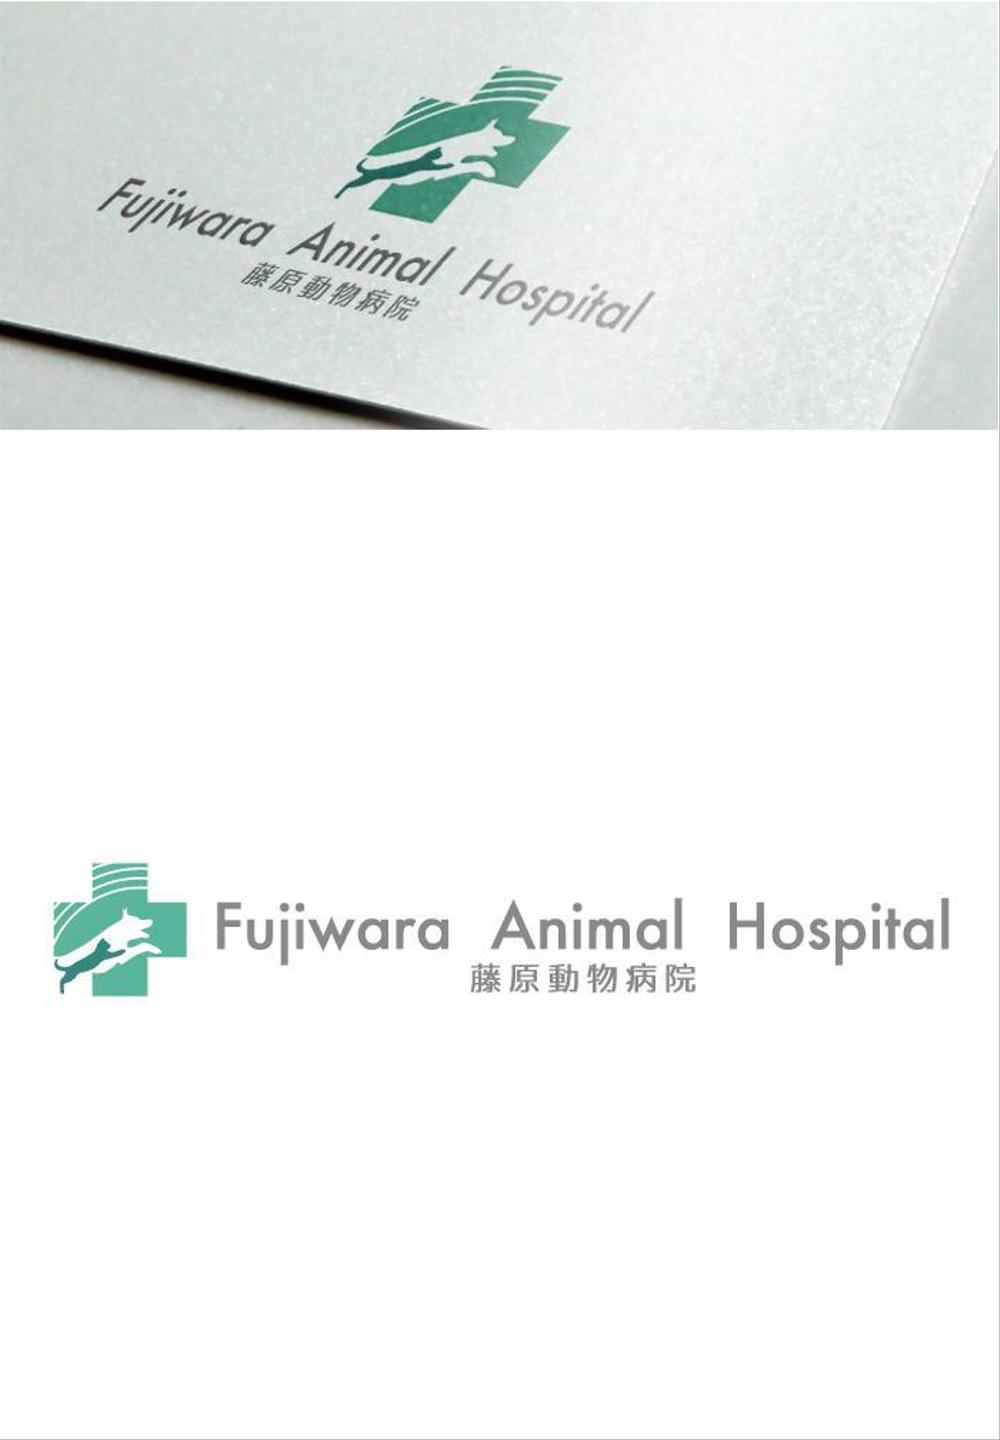 動物病院のロゴ作成